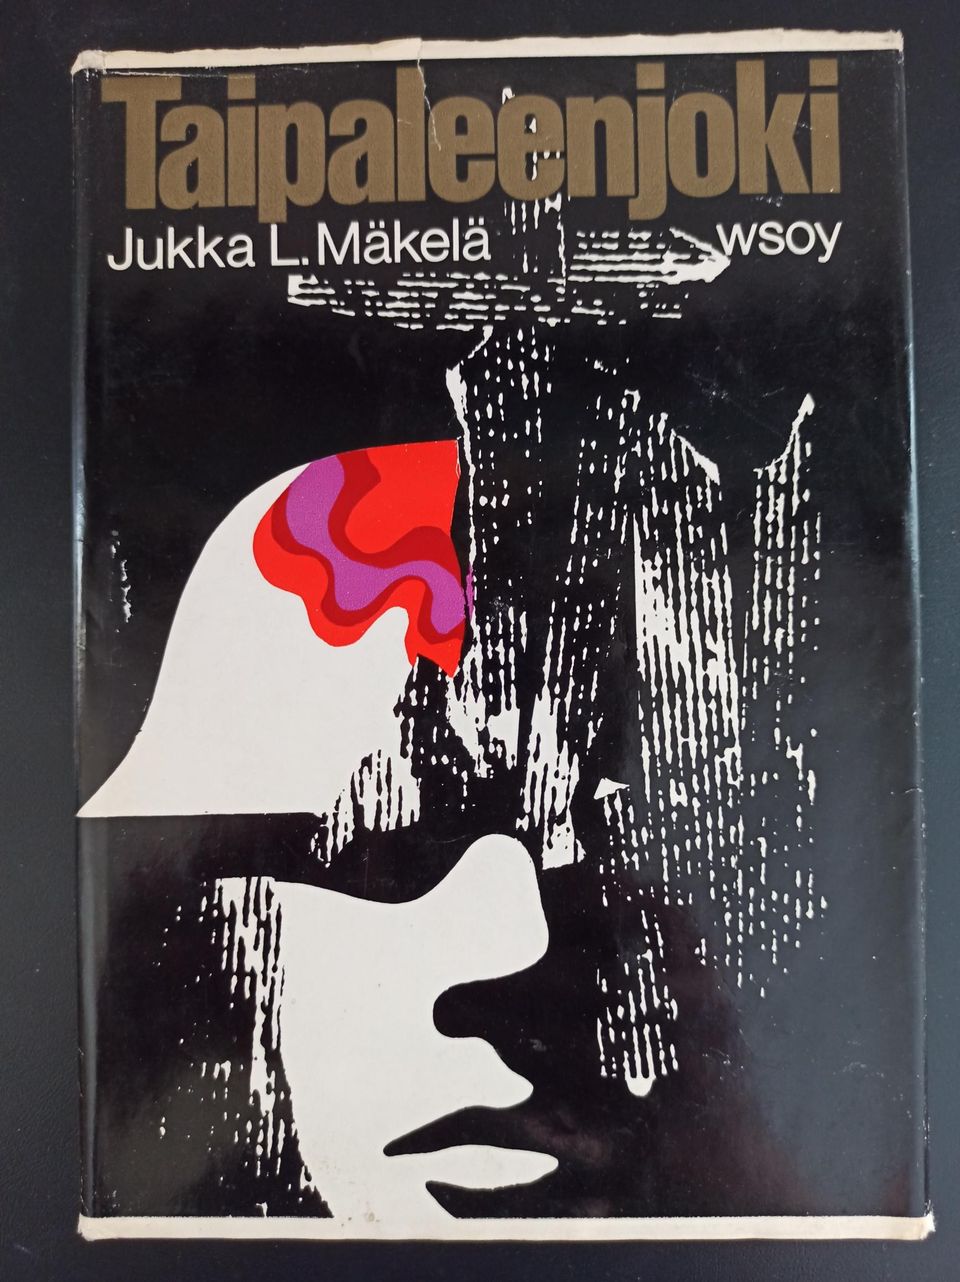 Taipaleenjoki, Mäkelä Jukka L., v. 1971